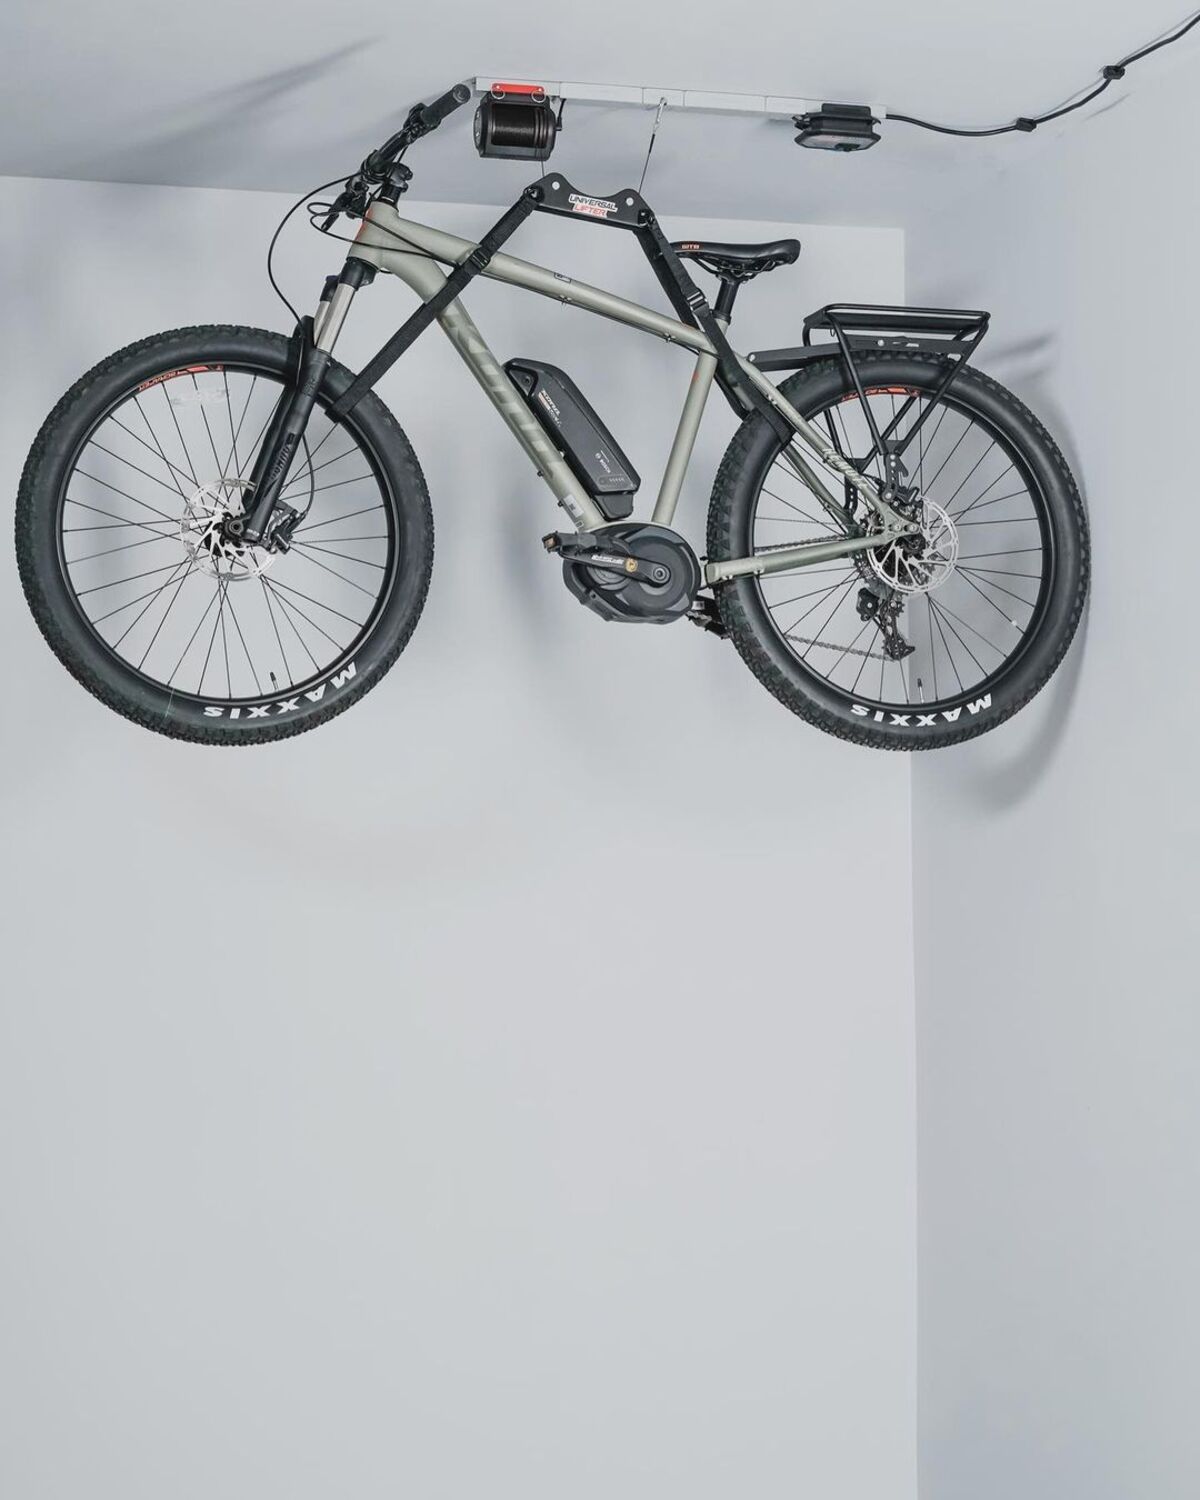 15 garage bike storage ideas 11